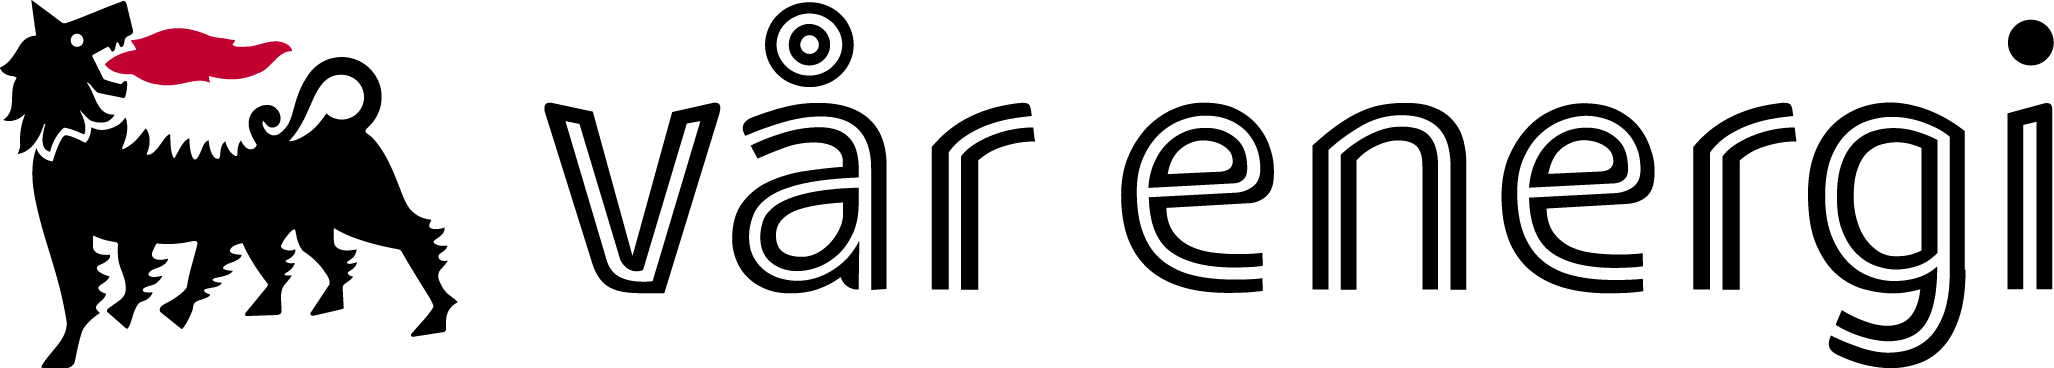 logo vår energi